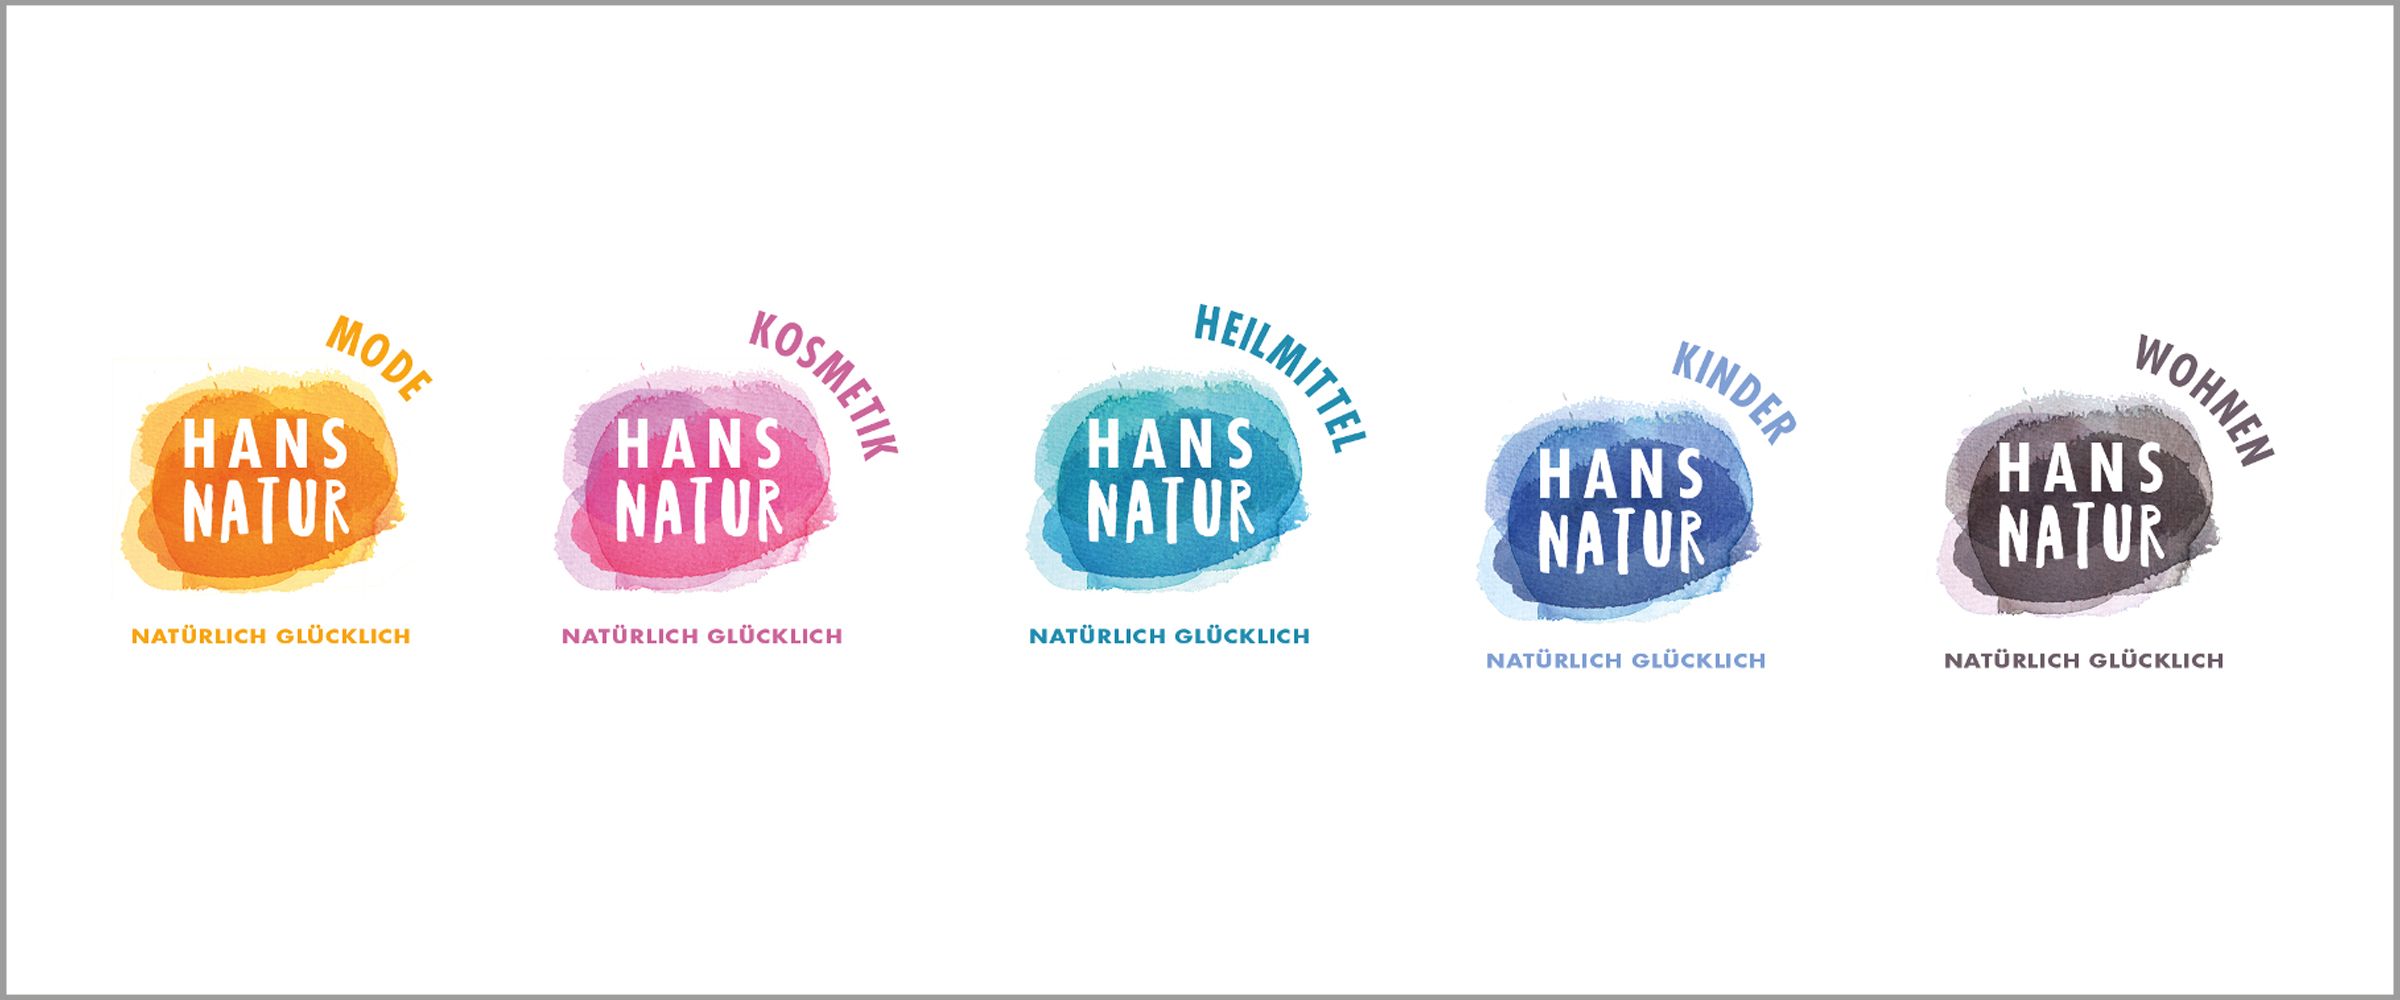 Übersich über 5 Hans Natur Logos